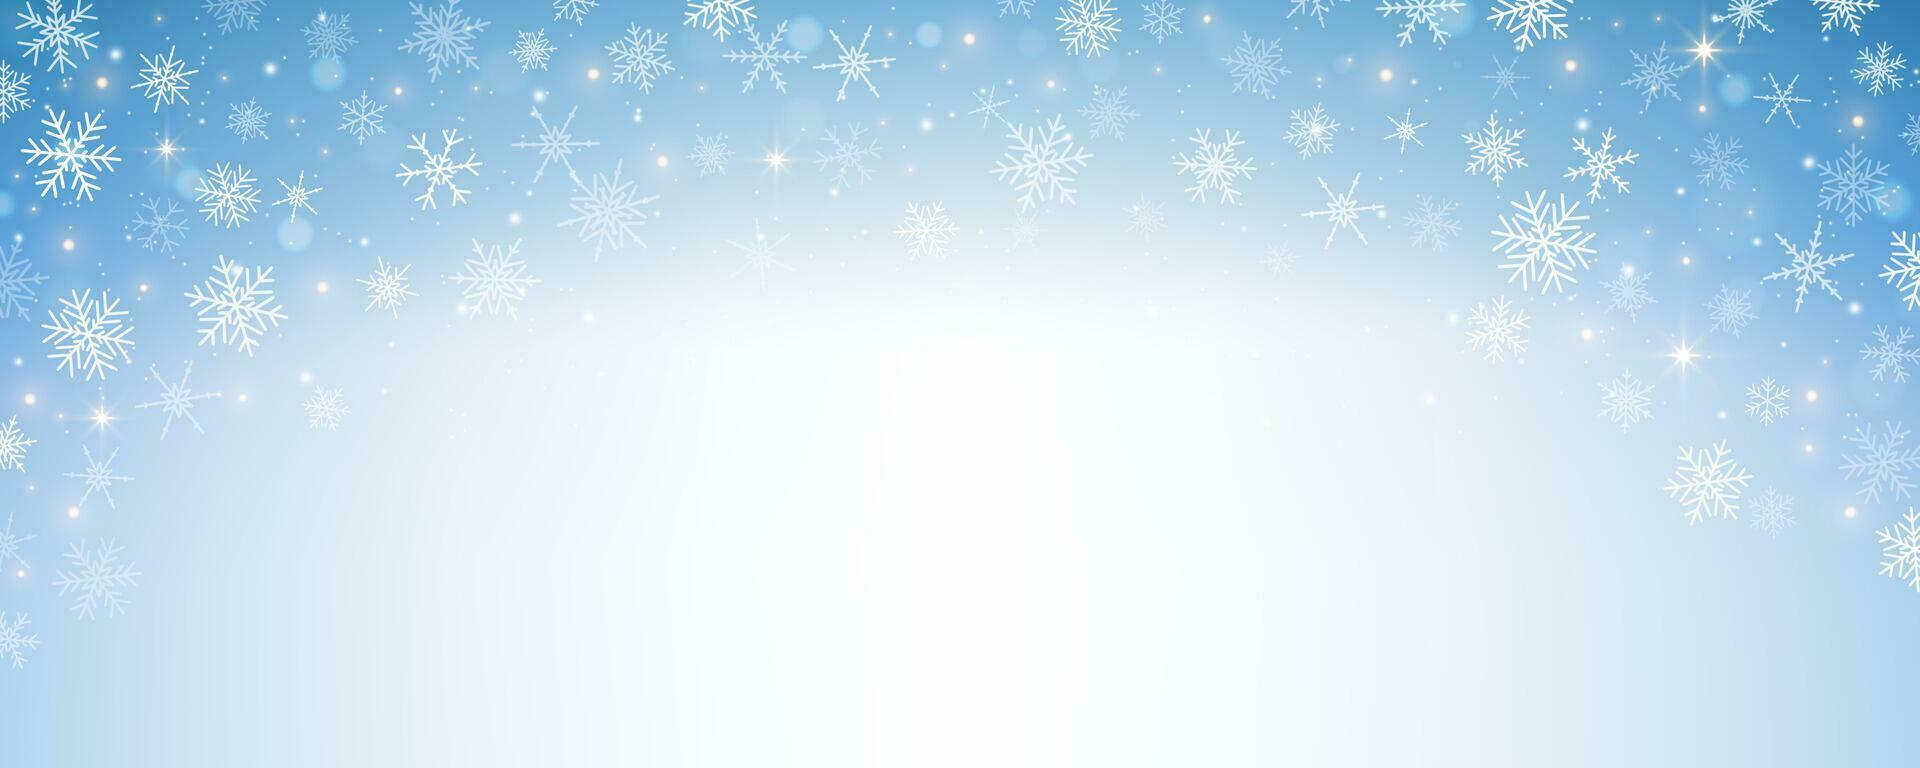 pastel winter lucht met sneeuwvlokken. blauw licht kleur verloop. fantasie zacht wazig behang. vector Kerstmis landschap.